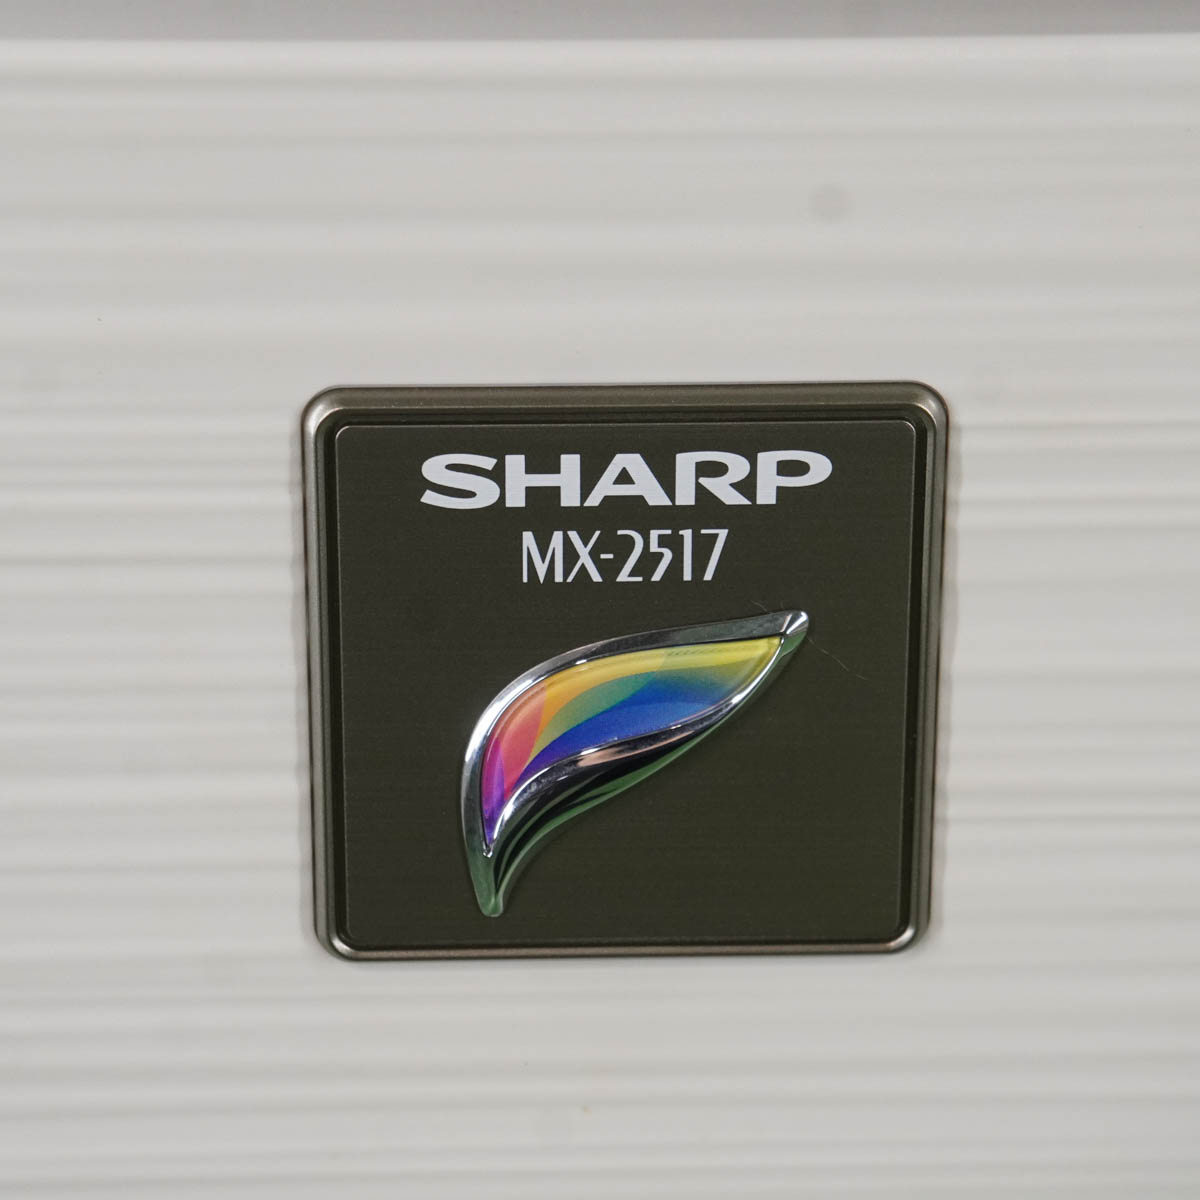 ≪超目玉☆12月≫ DIRWINGSショップ PG USED 8日保証 印刷4593枚 SHARP MX-2517 MX-2517FN デジタルフルカラー複合機  A3 ソフトウェア ST04018-0020